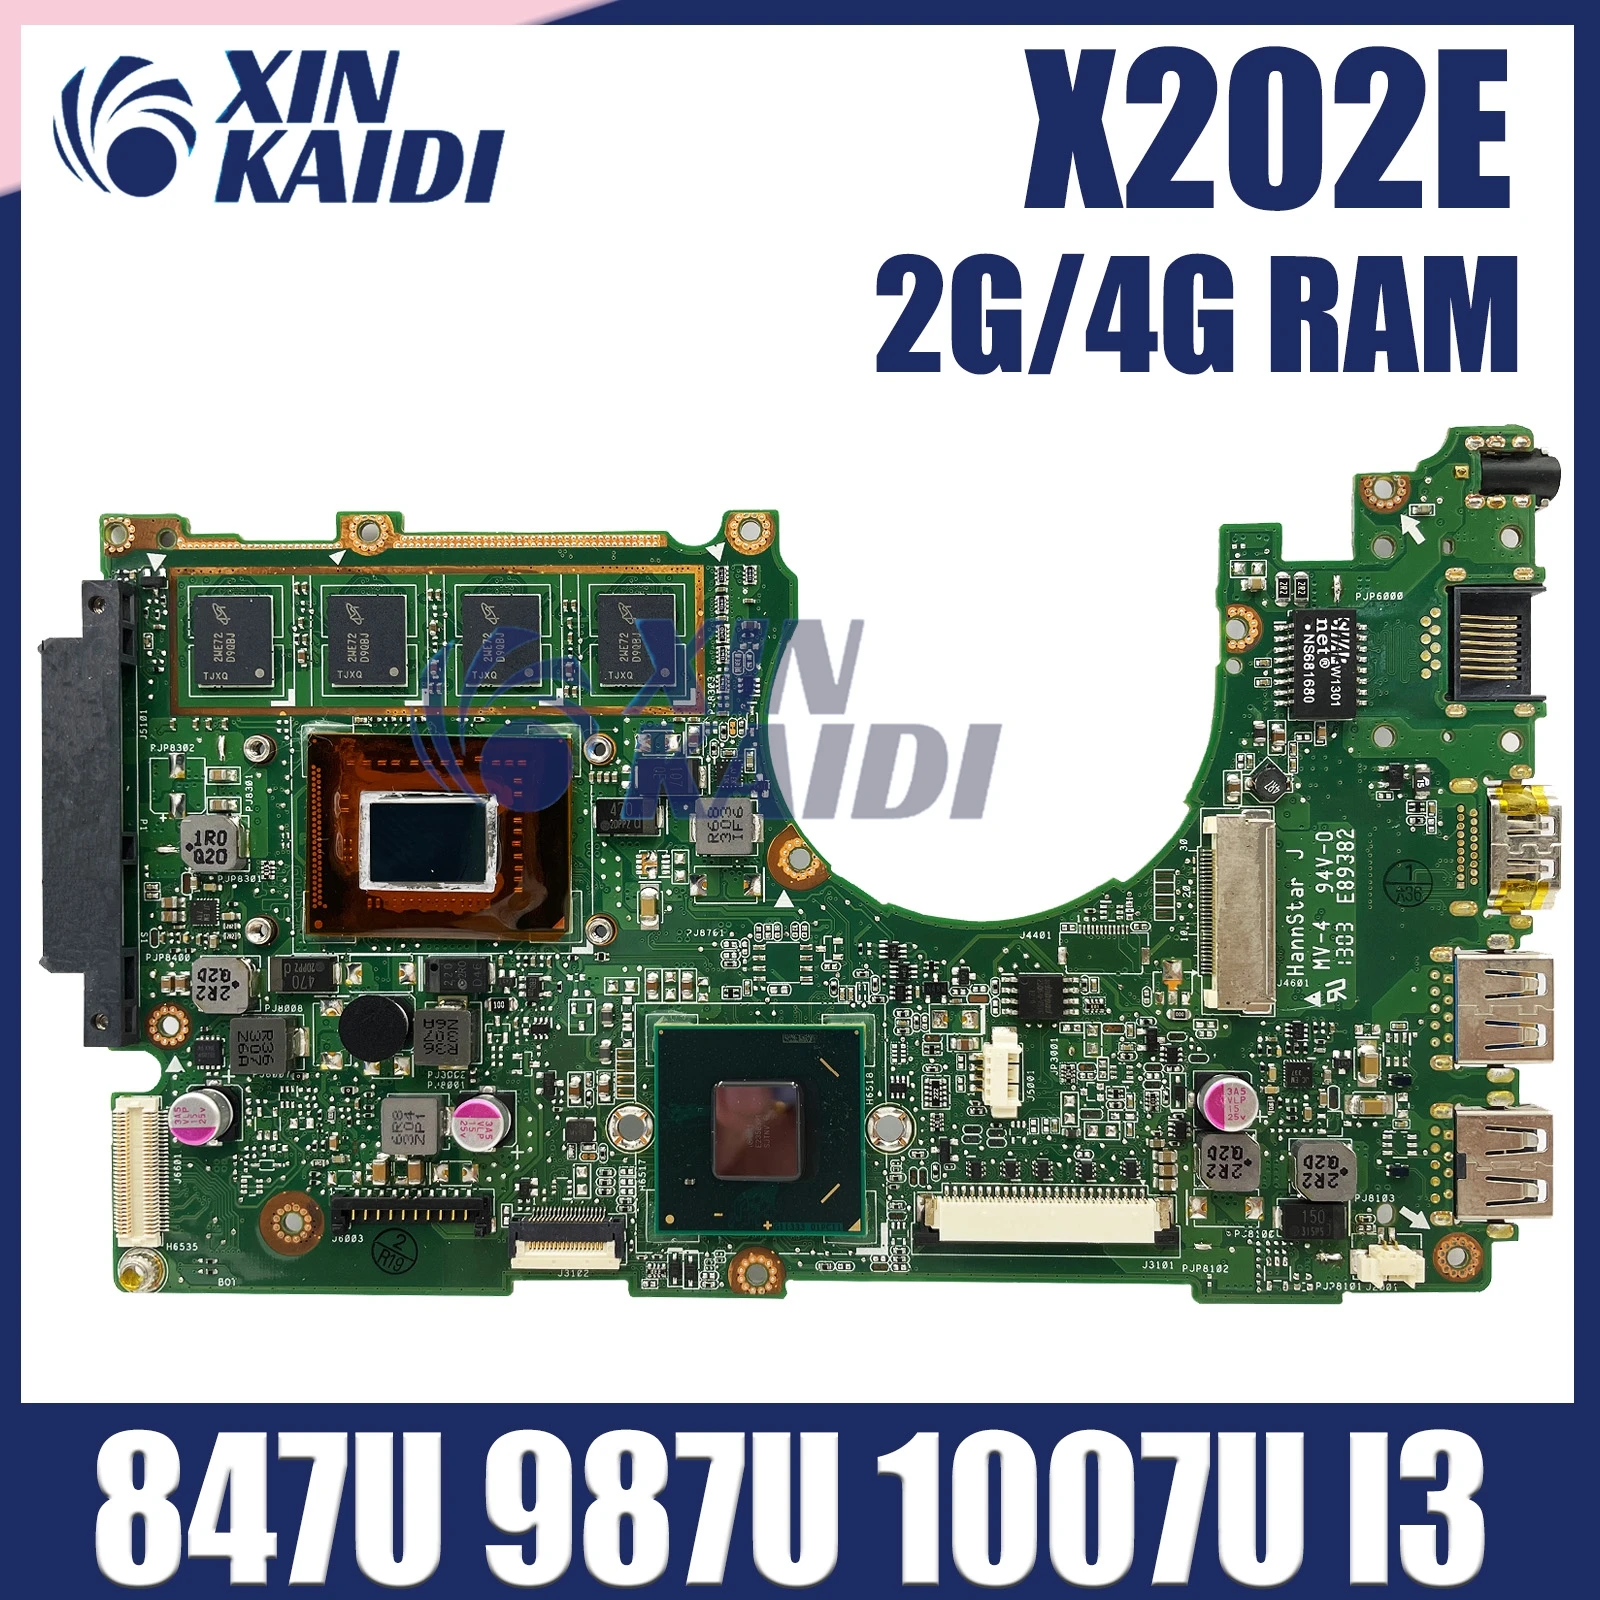 

X202E Mainboard For ASUS S200E X202E X201E X202EP Vivobook Motherboard 847/987 1007U I3-3217U CPU 4G/2G-RAM 100% Test OK